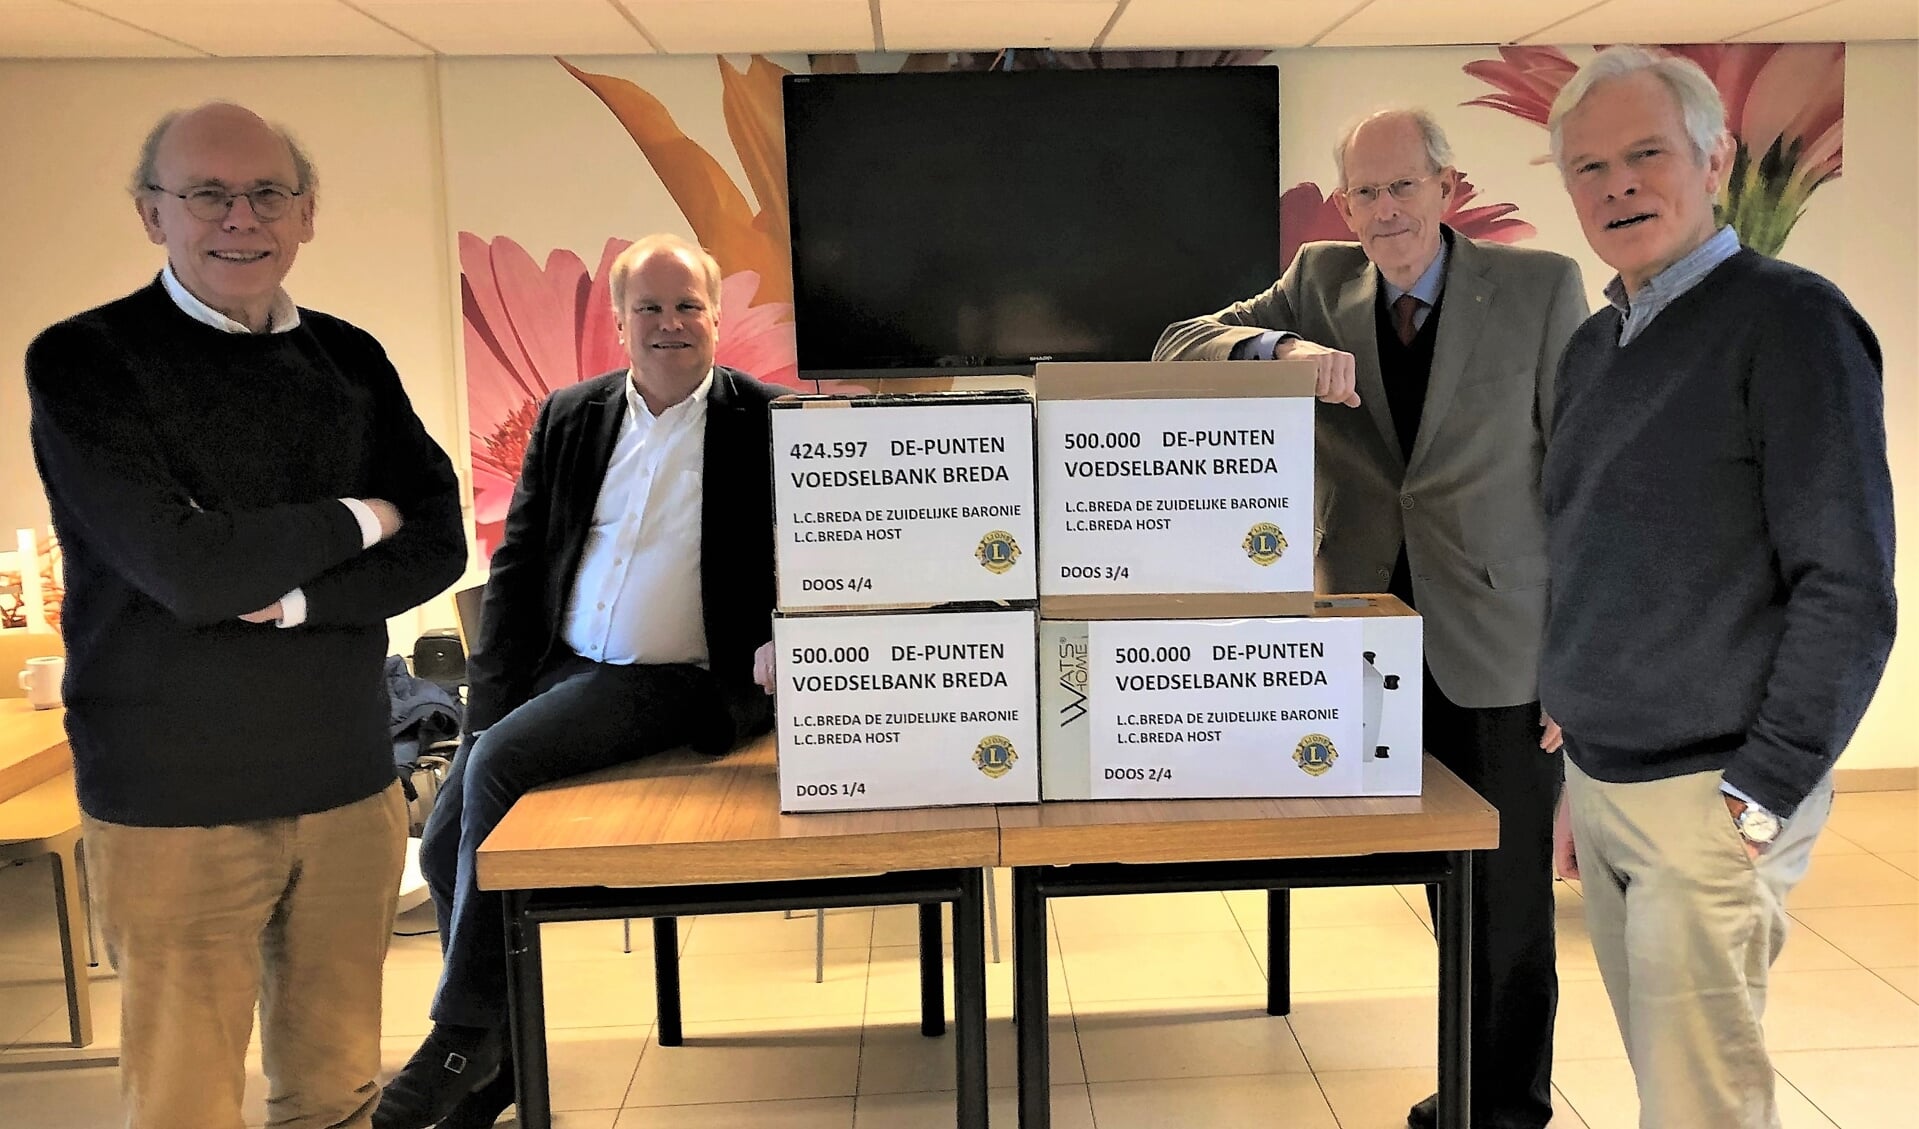 Overdracht van de DE-punten aan de Voedselbank. Op de foto 3 Lions en geheel rechts de heer Joost Bauwens, voorzitter van de Voedselbank.